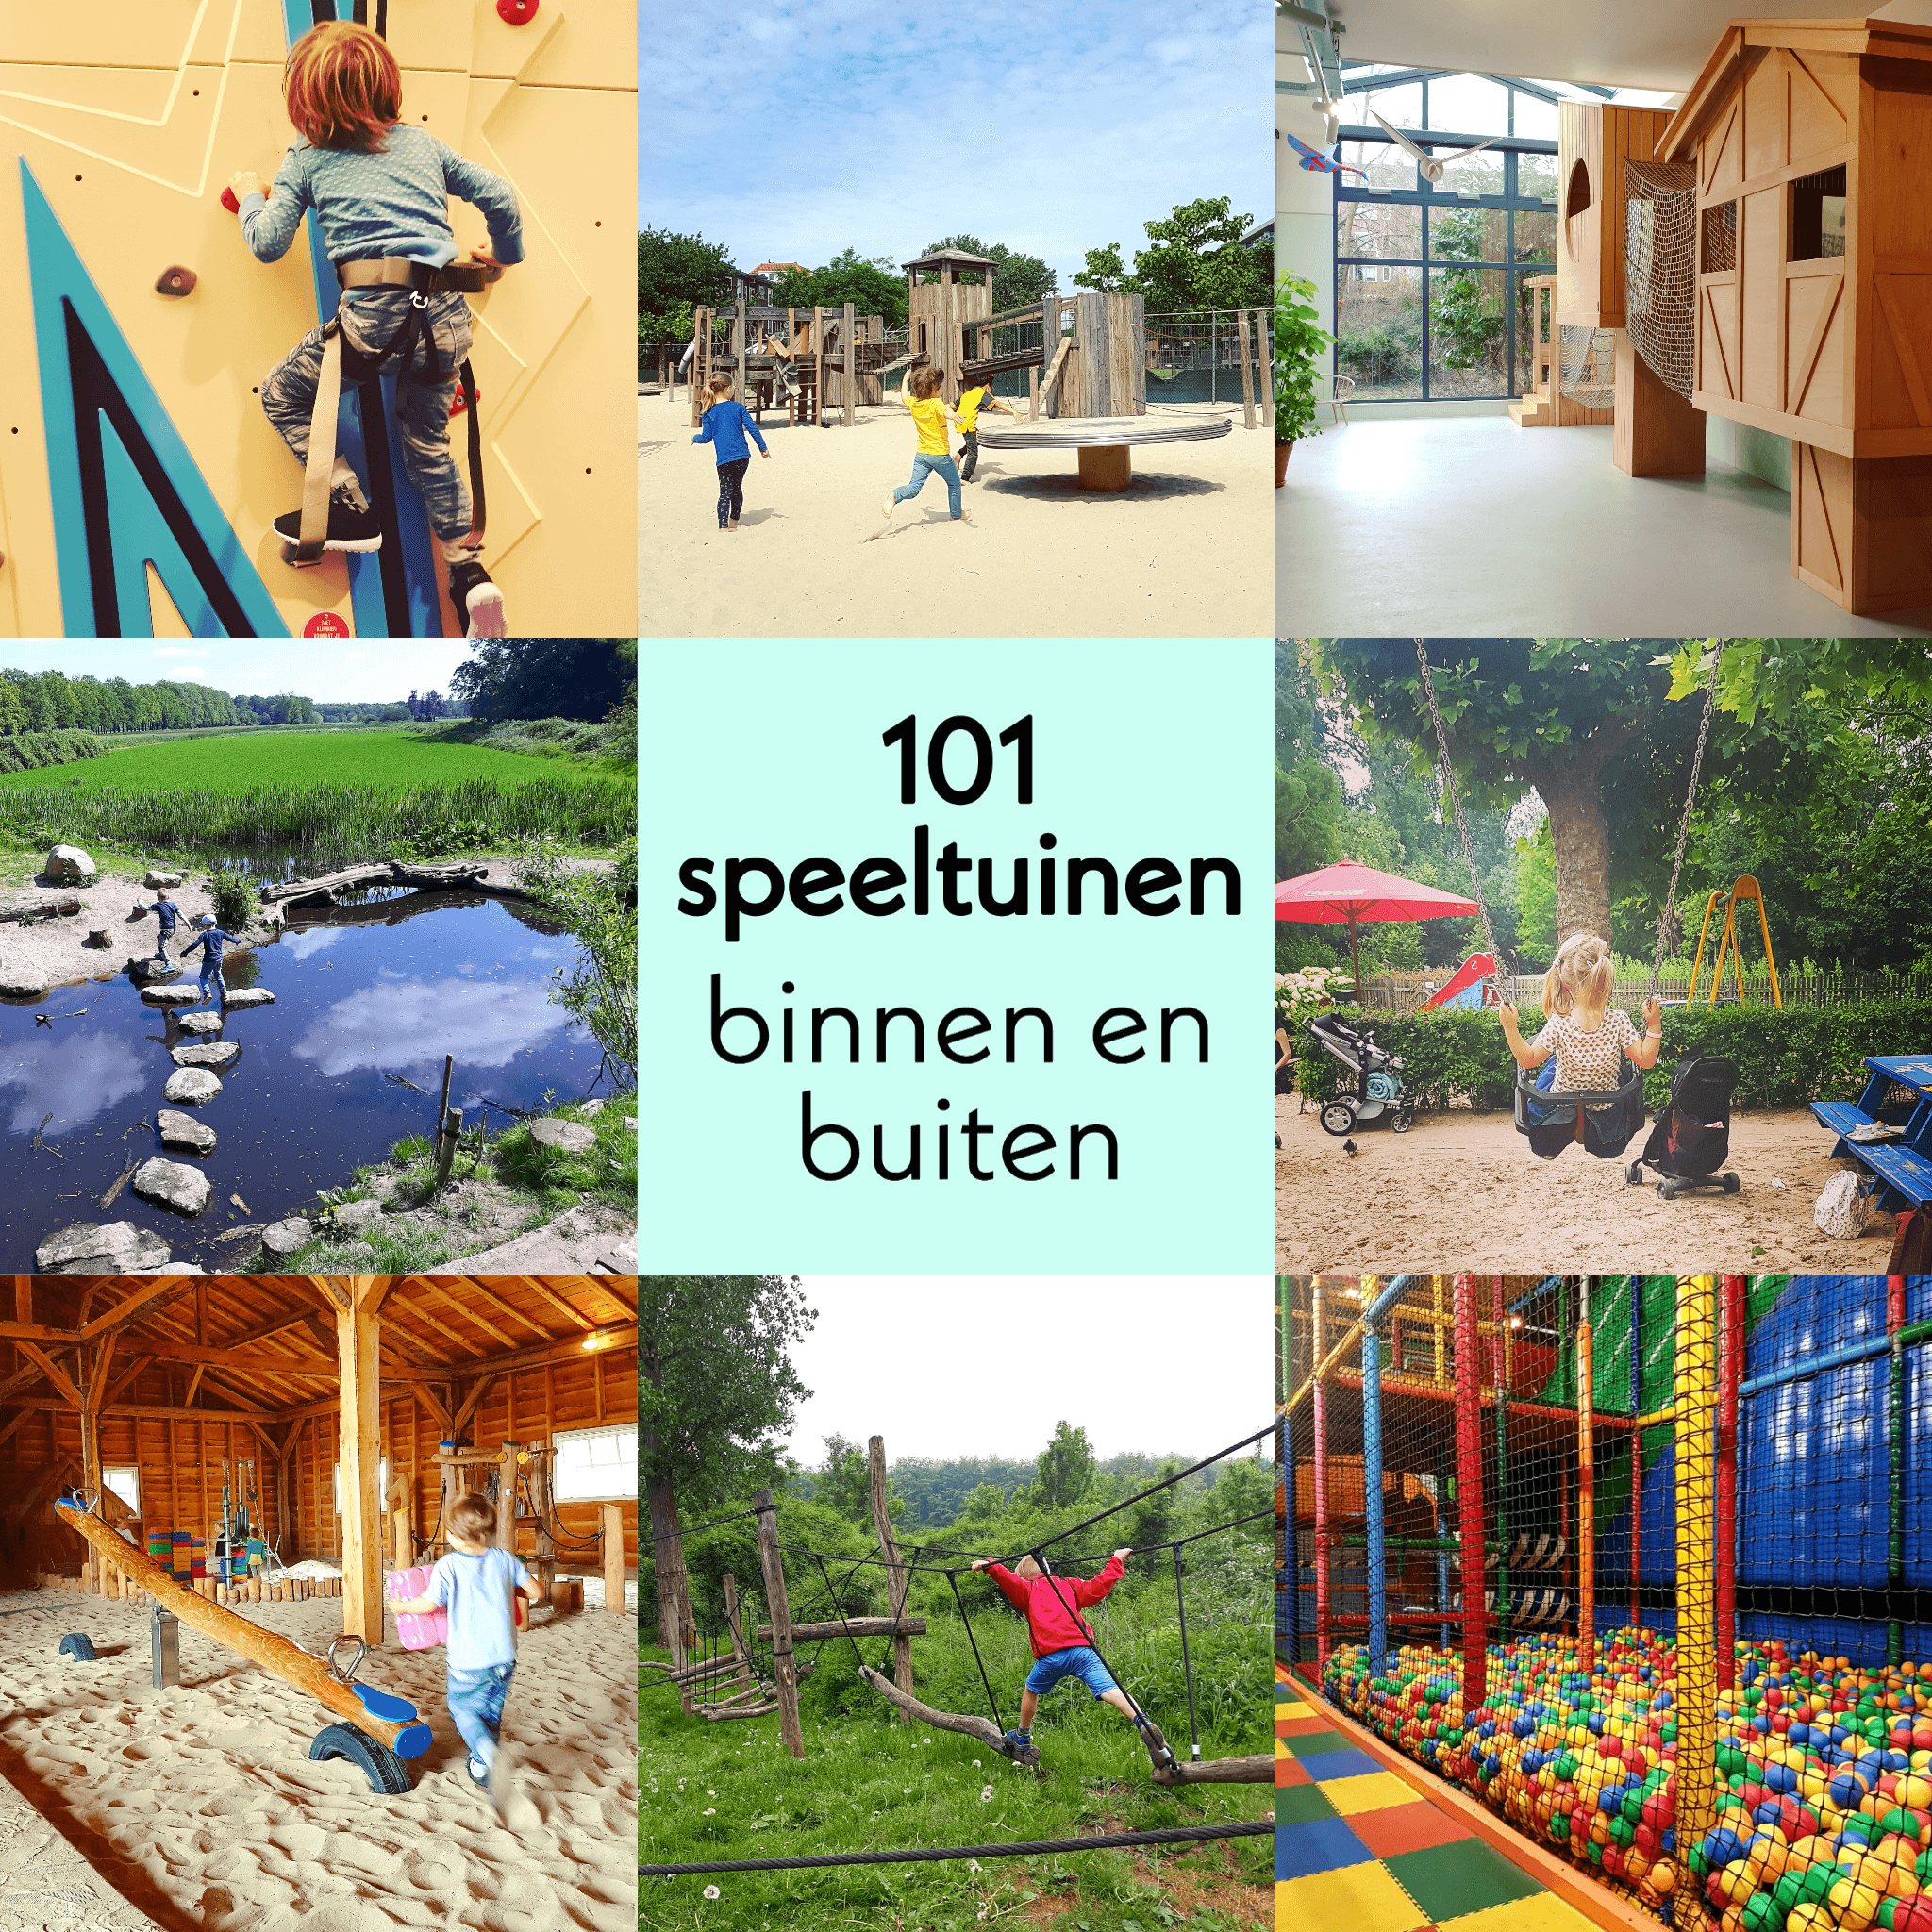 Andere plaatsen bolvormig Wie De leukste buitenspeeltuinen en binnenspeeltuinen in heel Nederland Leuk  met kids